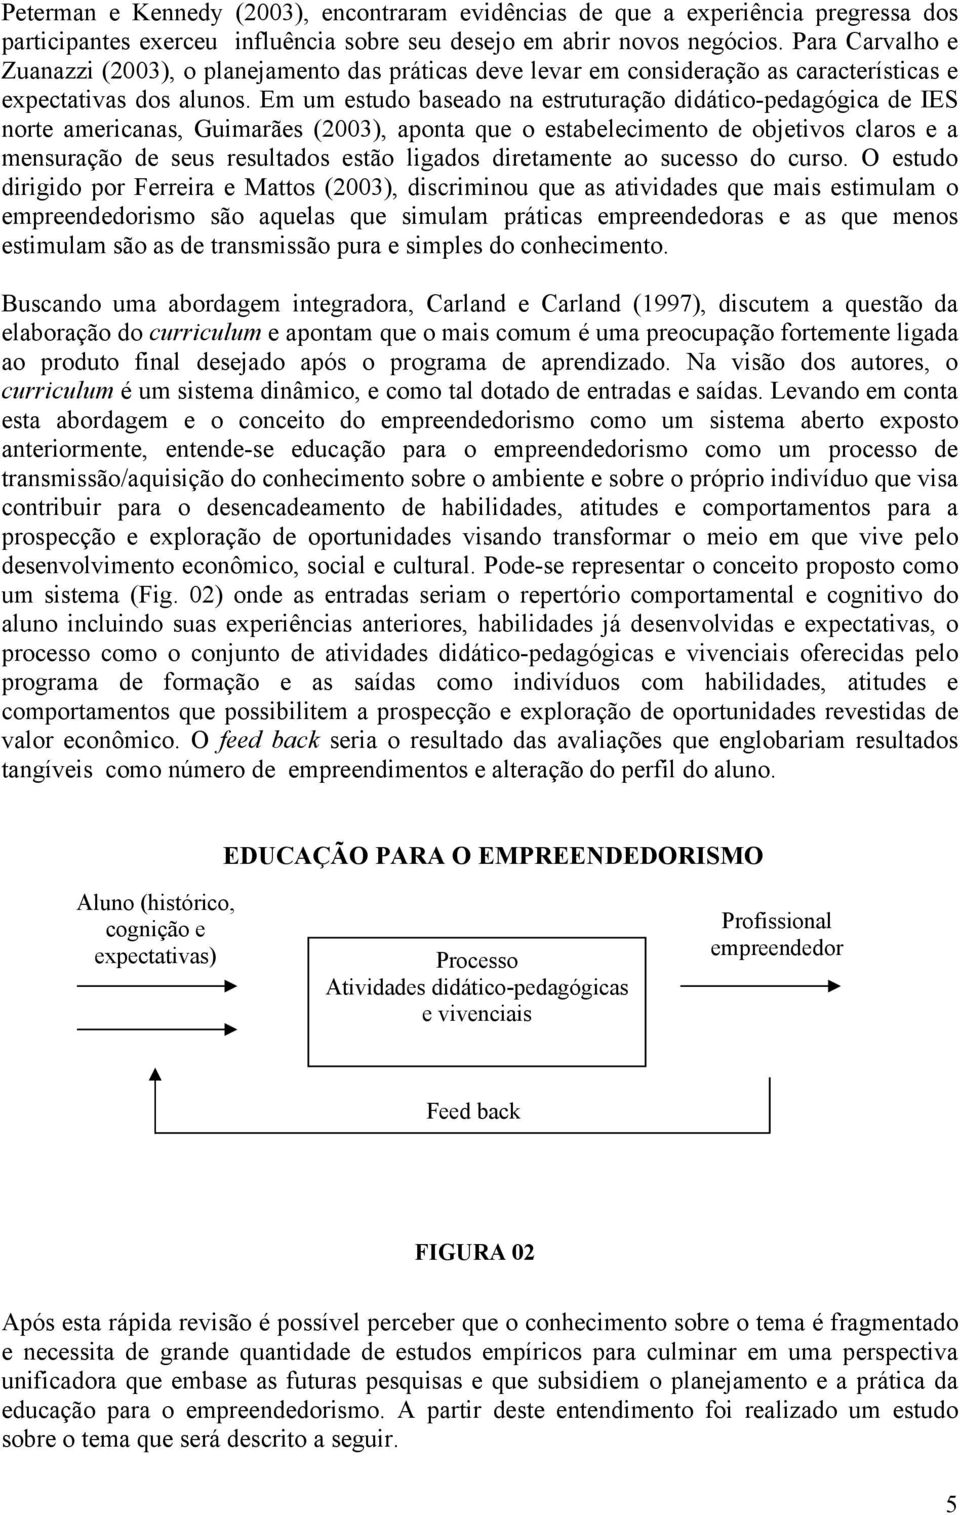 Em um estudo baseado na estruturação didático-pedagógica de IES norte americanas, Guimarães (2003), aponta que o estabelecimento de objetivos claros e a mensuração de seus resultados estão ligados